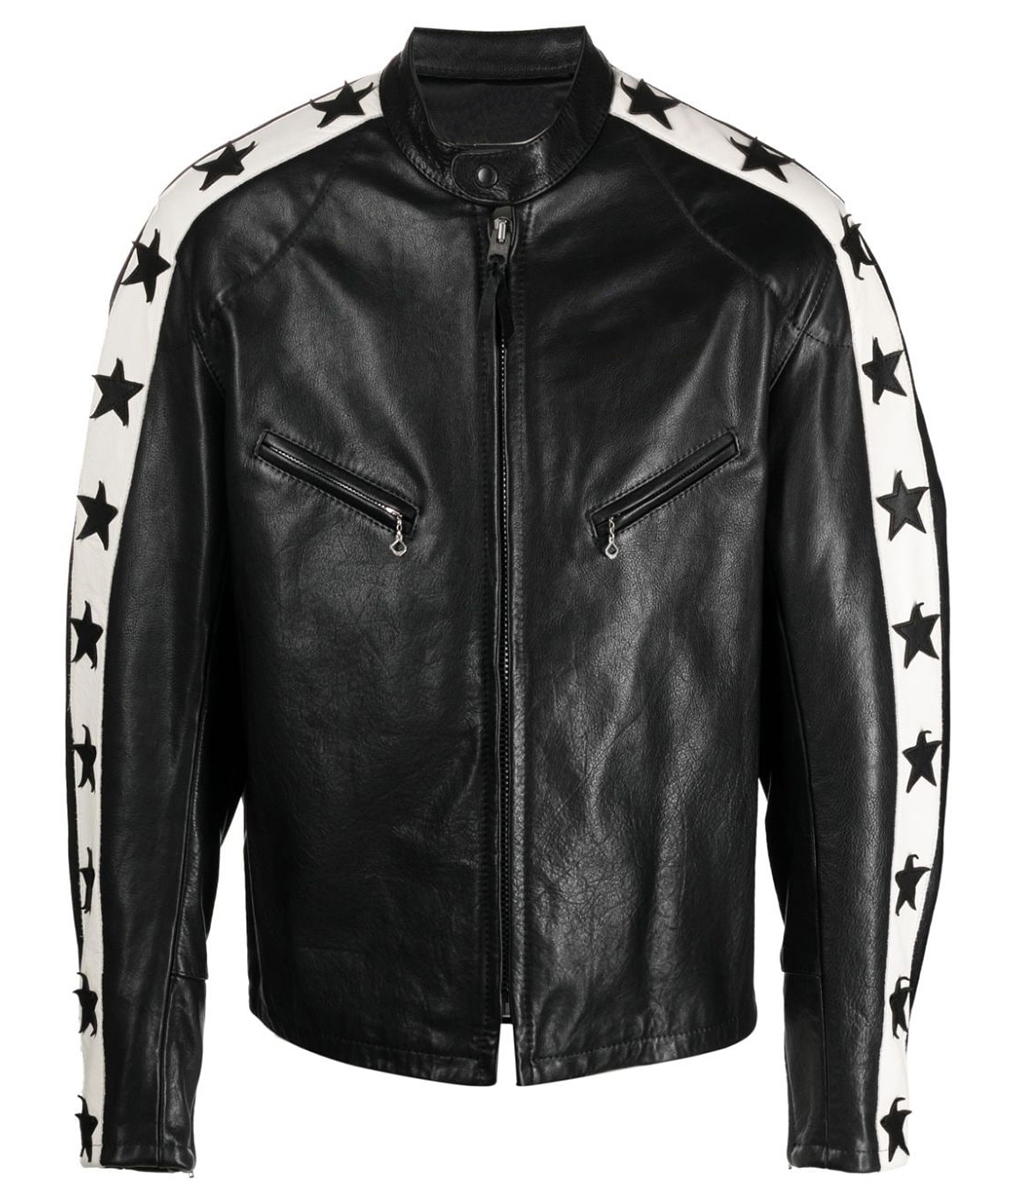 Odell Beckham Jr. Super Bowl Leather Jacket (4)